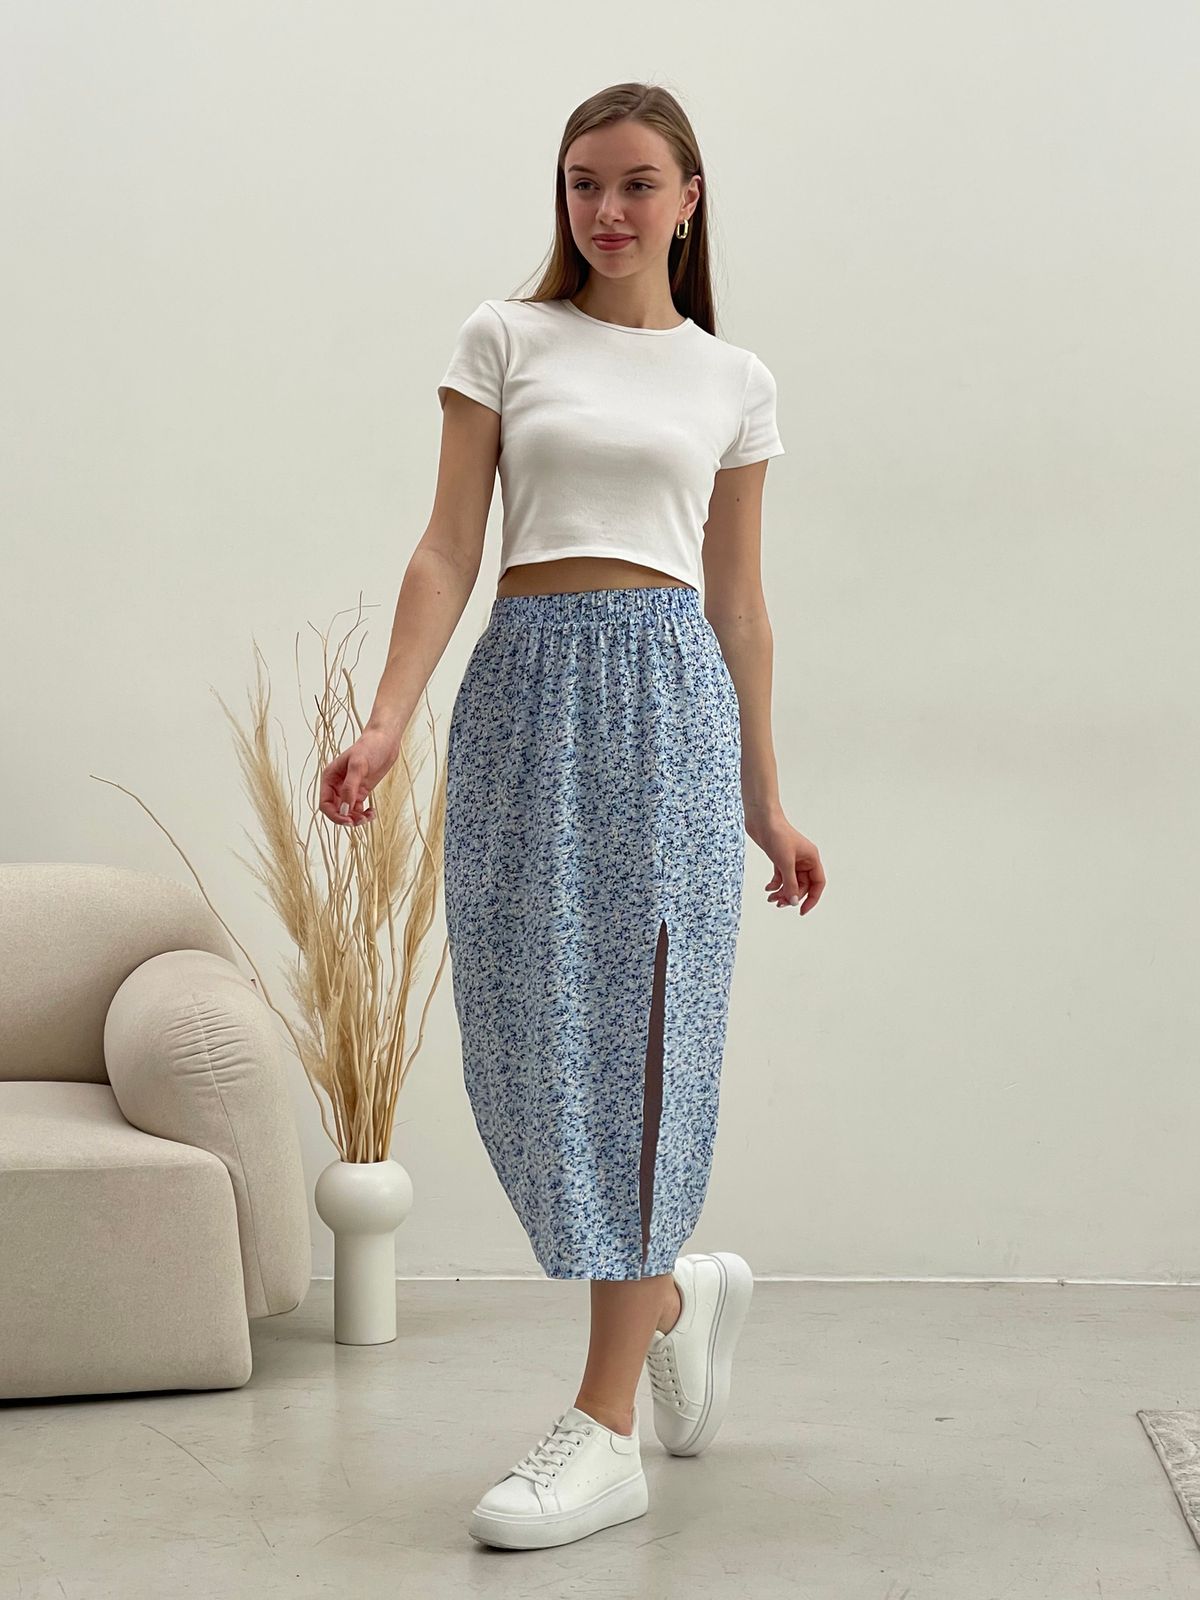 Купить Длинная женская юбка с разрезом в цветочек голубая Merlini Лакко 400001265 размер 42-44 (S-M) в интернет-магазине